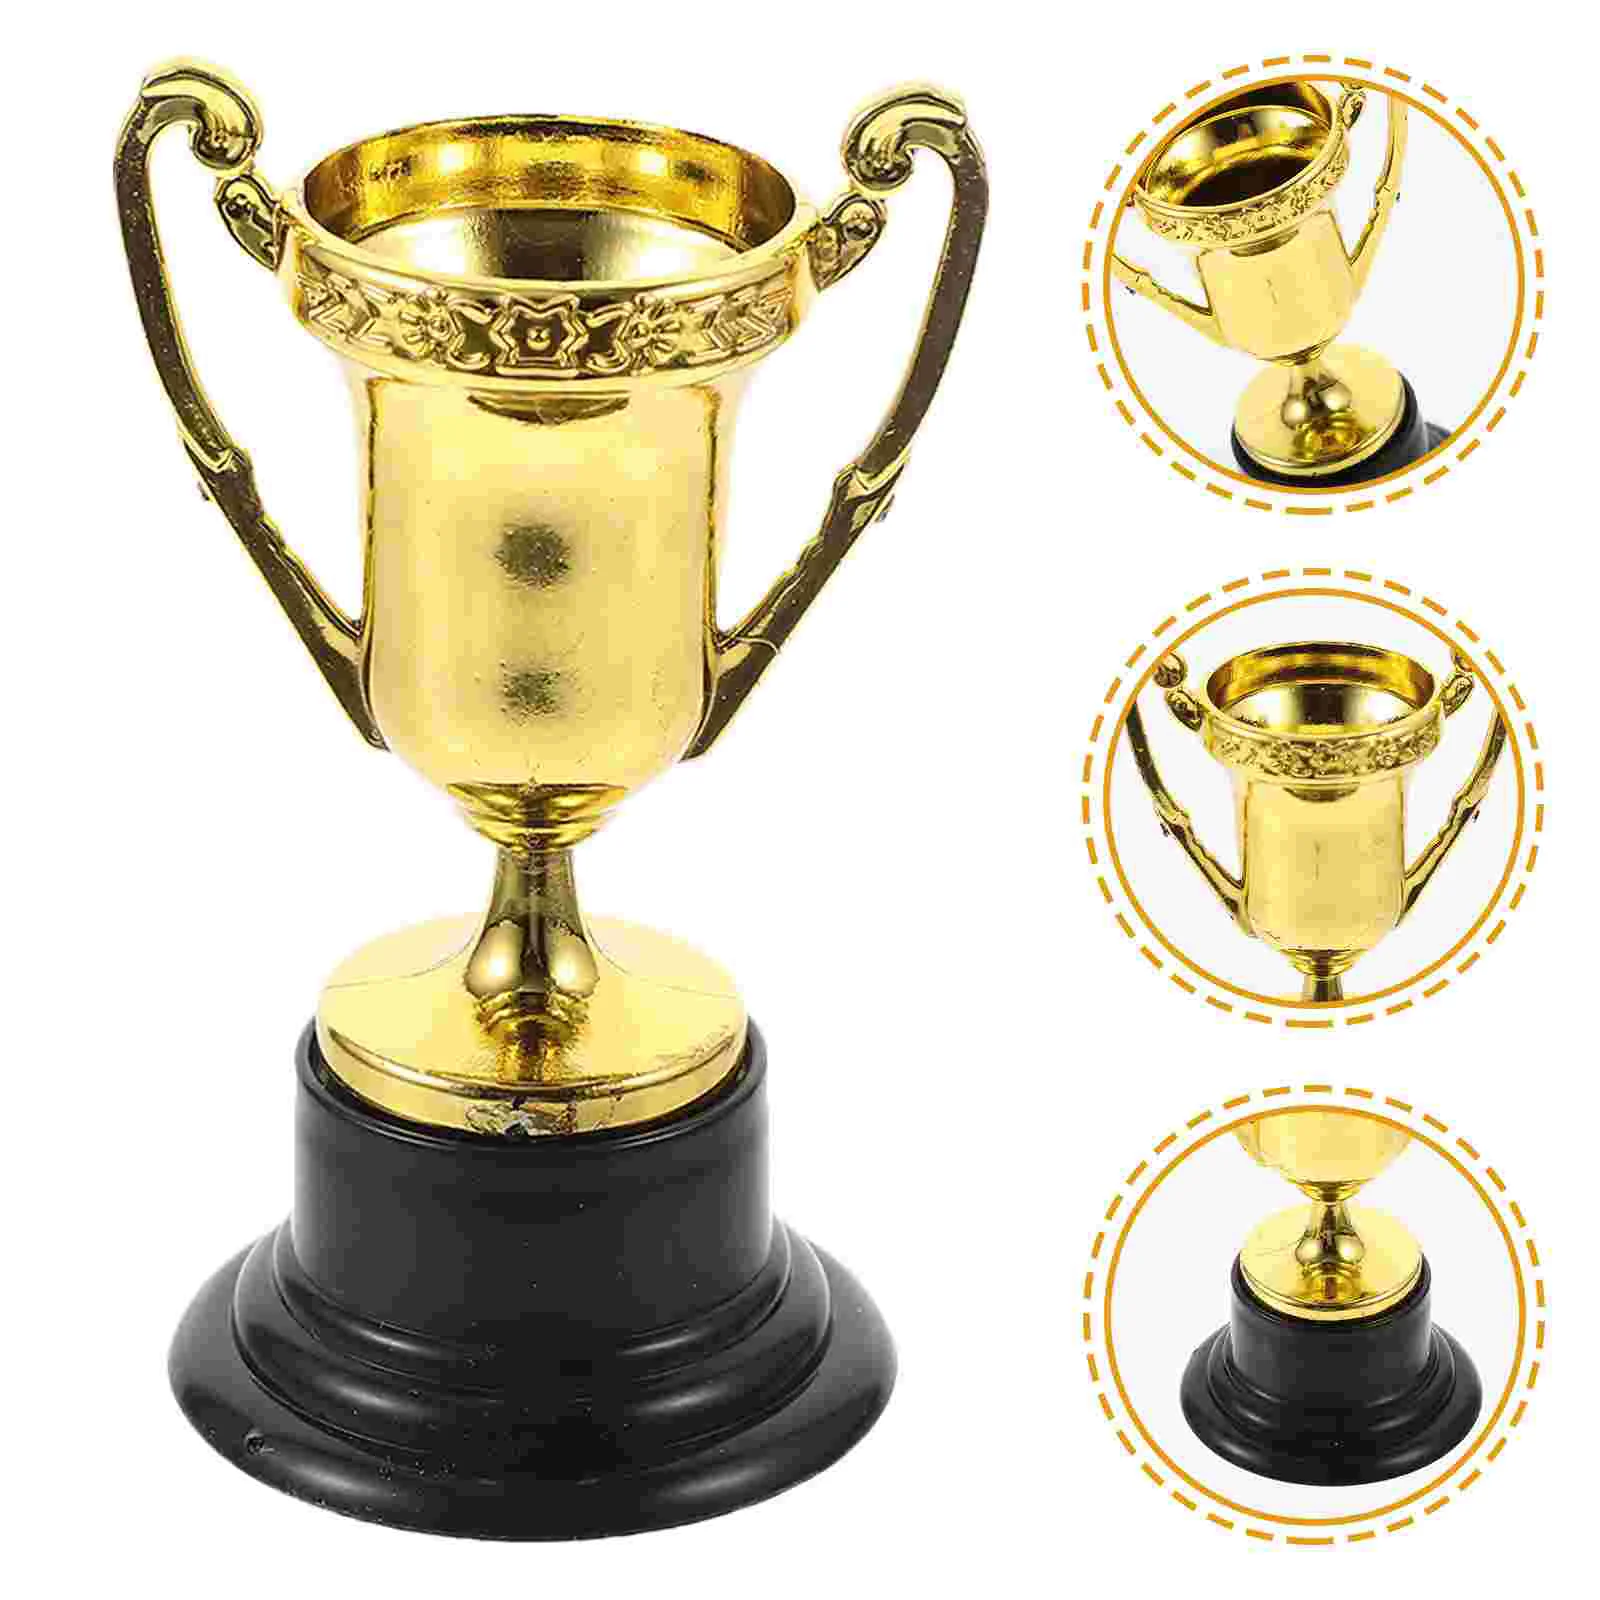 

12 шт., Золотая награда, трофей, наград на первое место, награды на соревнования, трофей, реквизит, награды класса